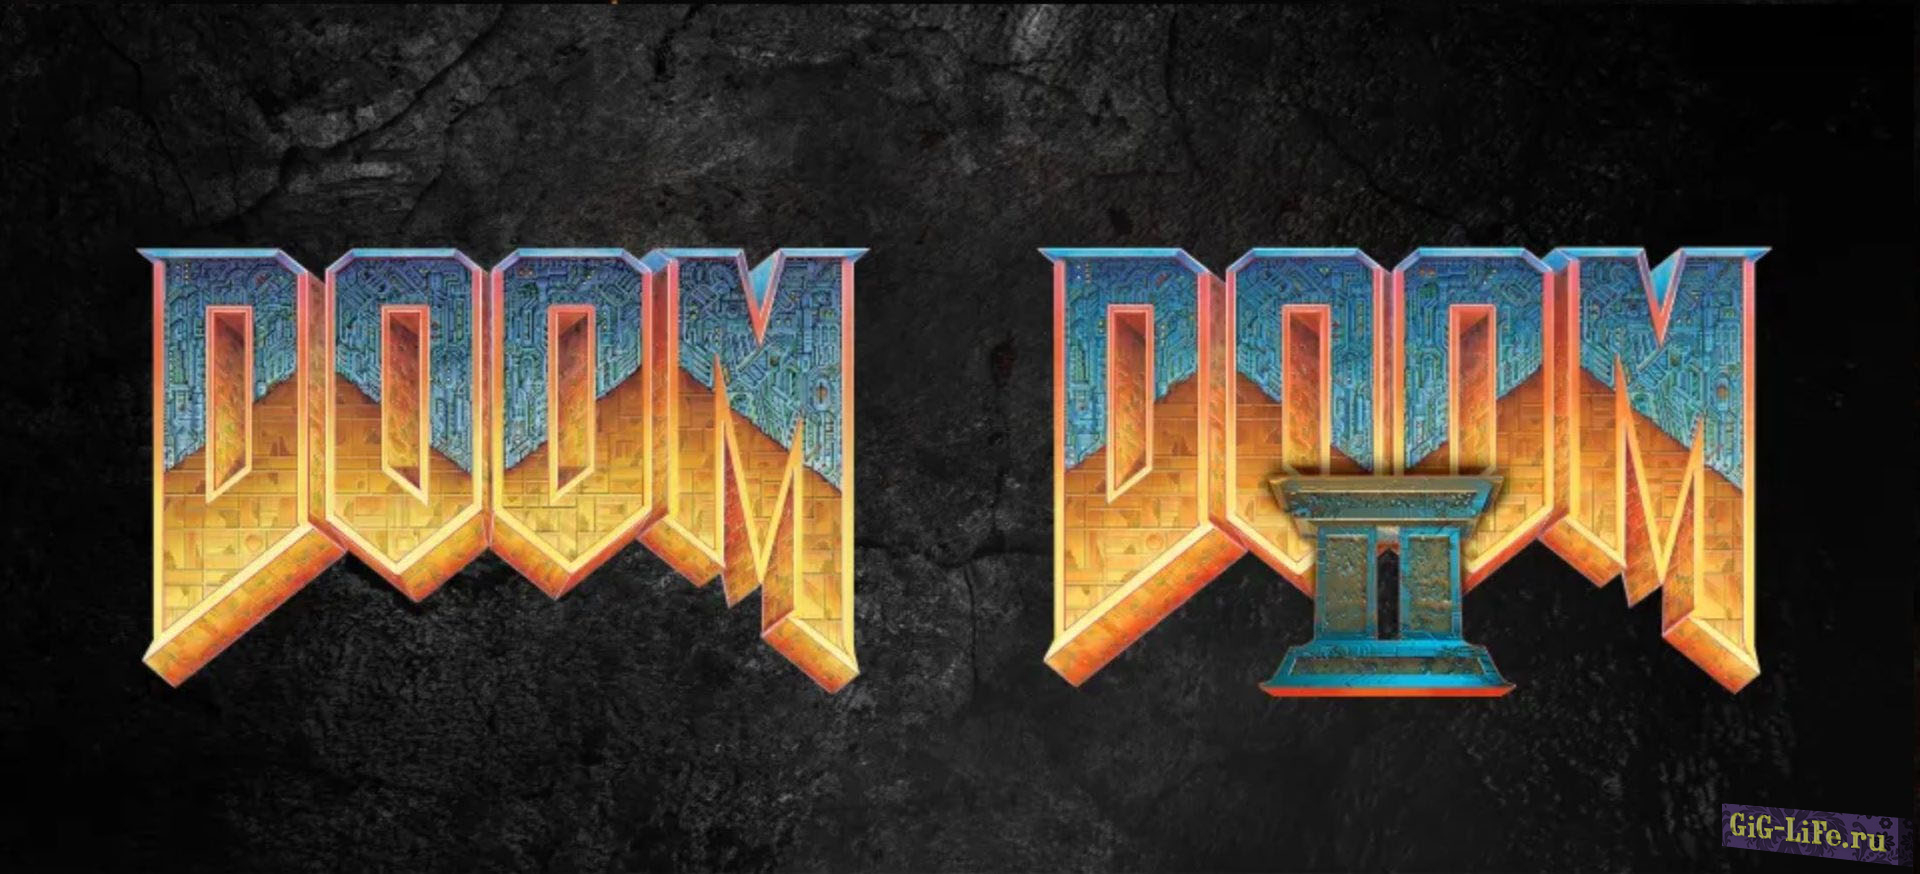 Переиздания Doom и Doom 2 появились в Steam